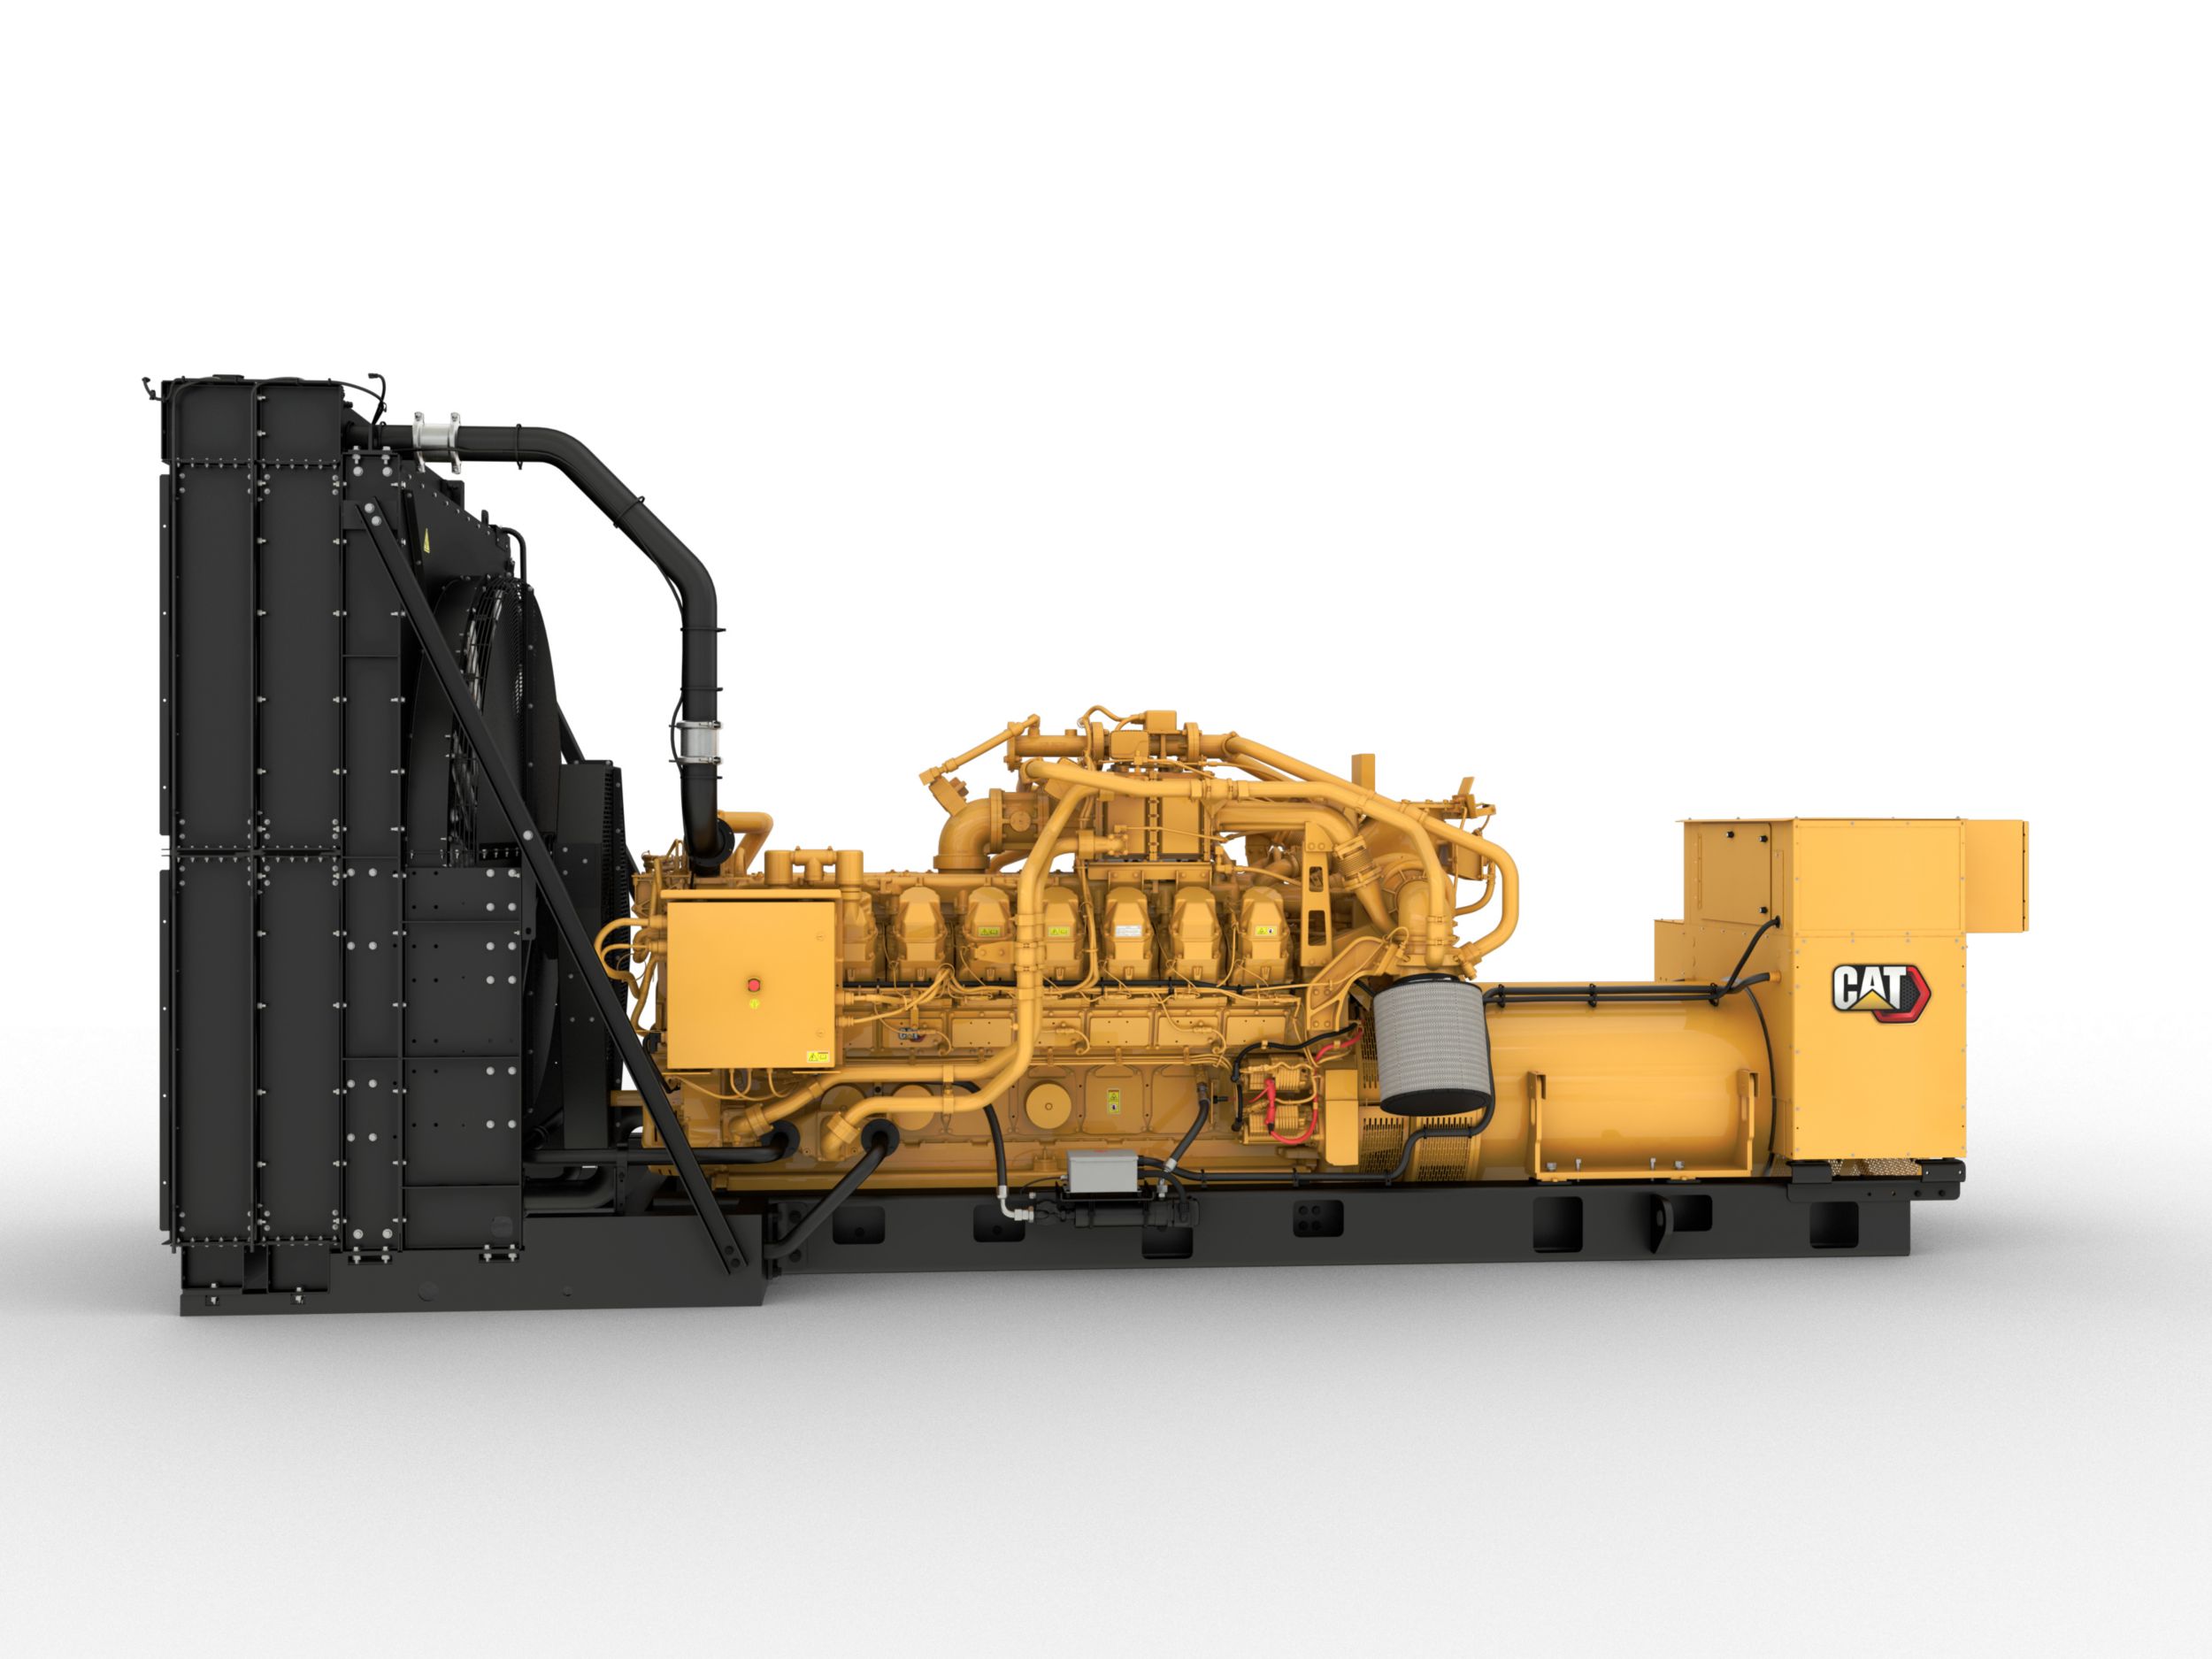 G3516 1500kW Gas Generator Set